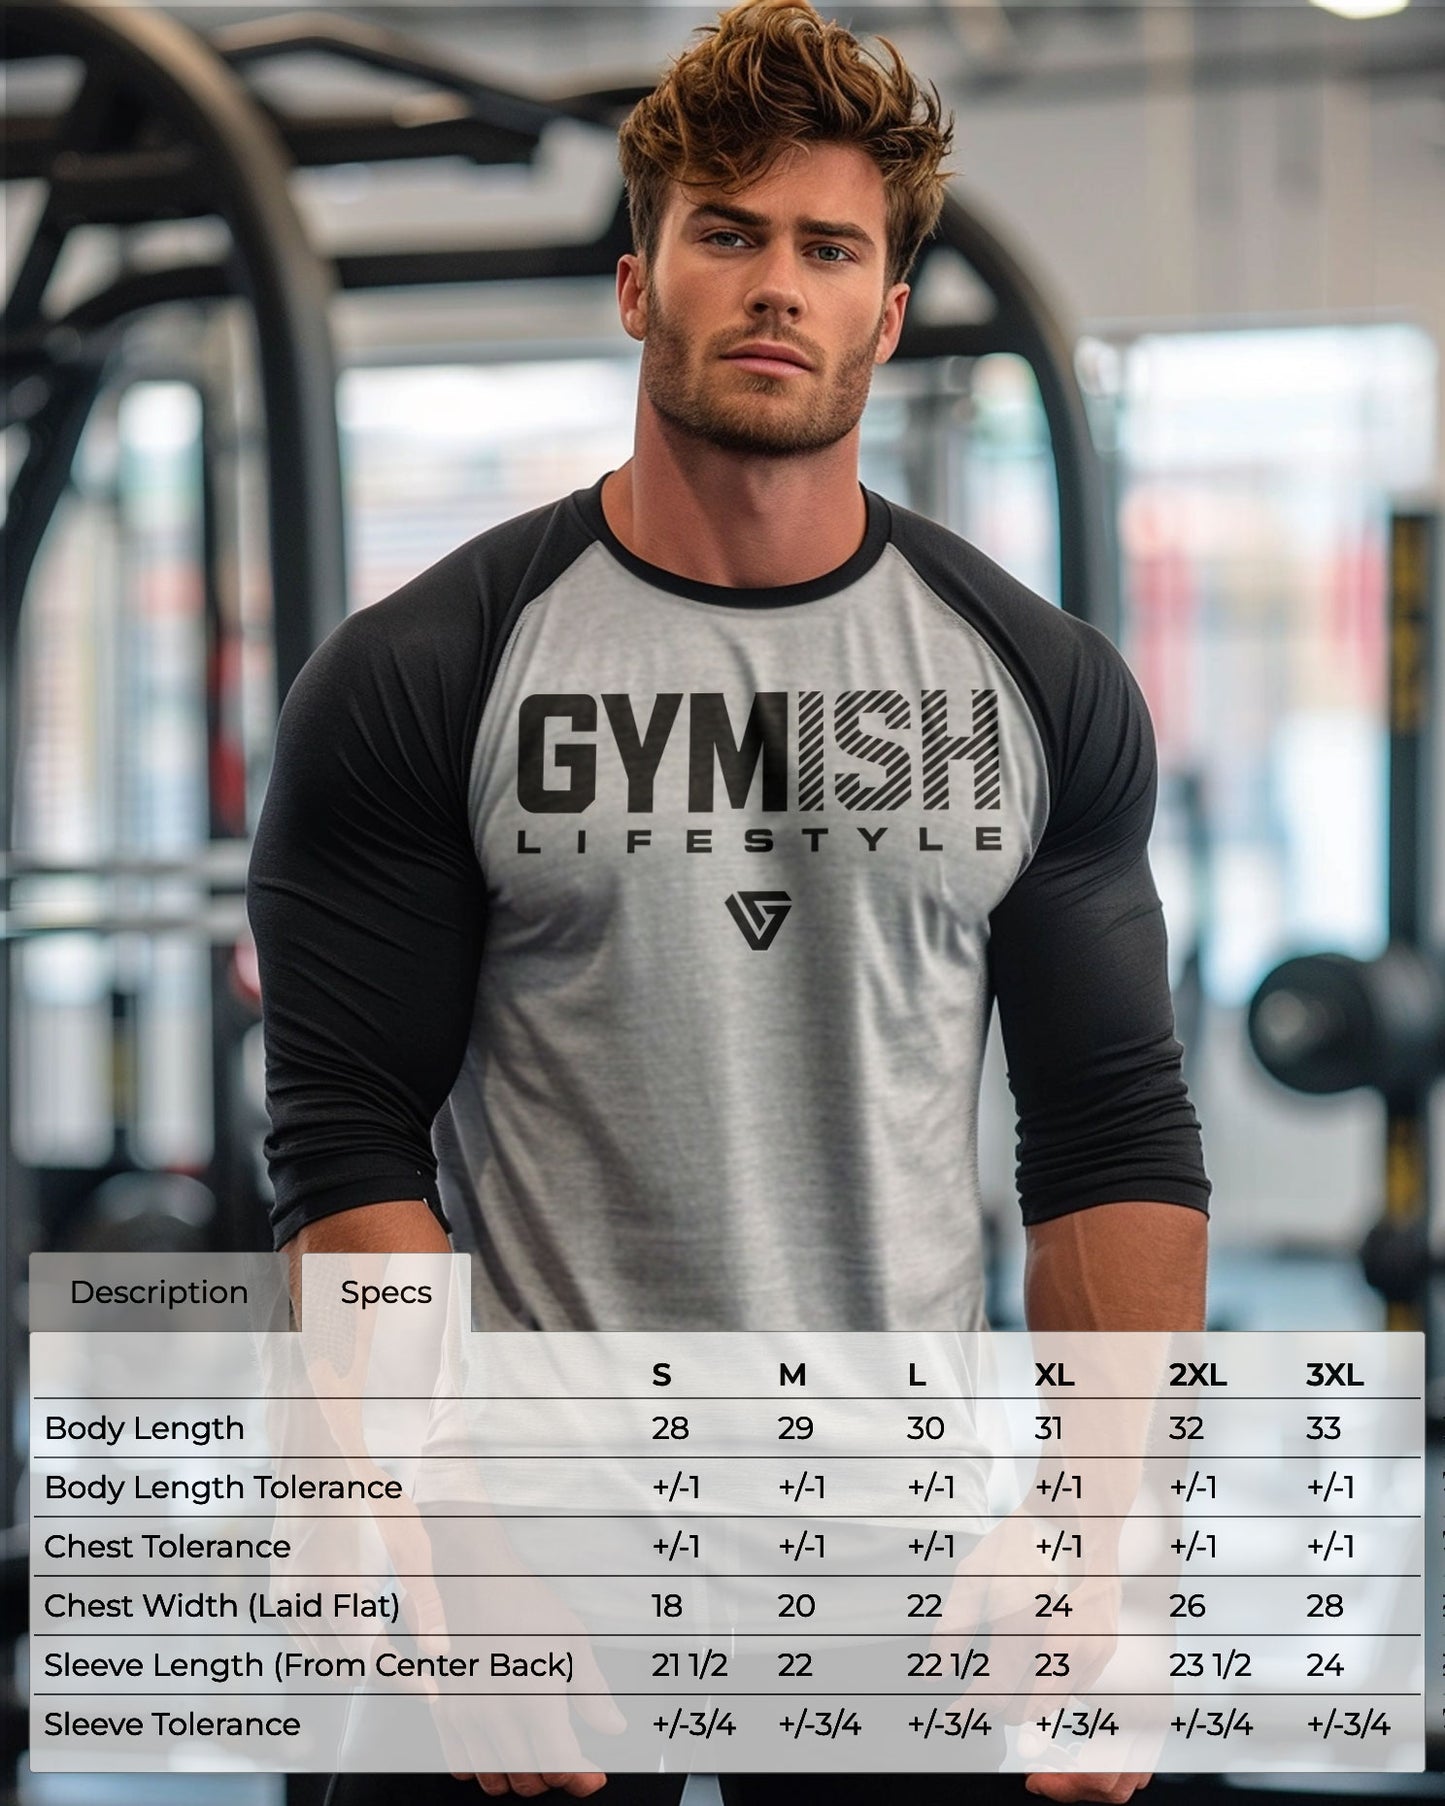 63- RAGLAN Get Big Workout Gym T-Shirt for Men